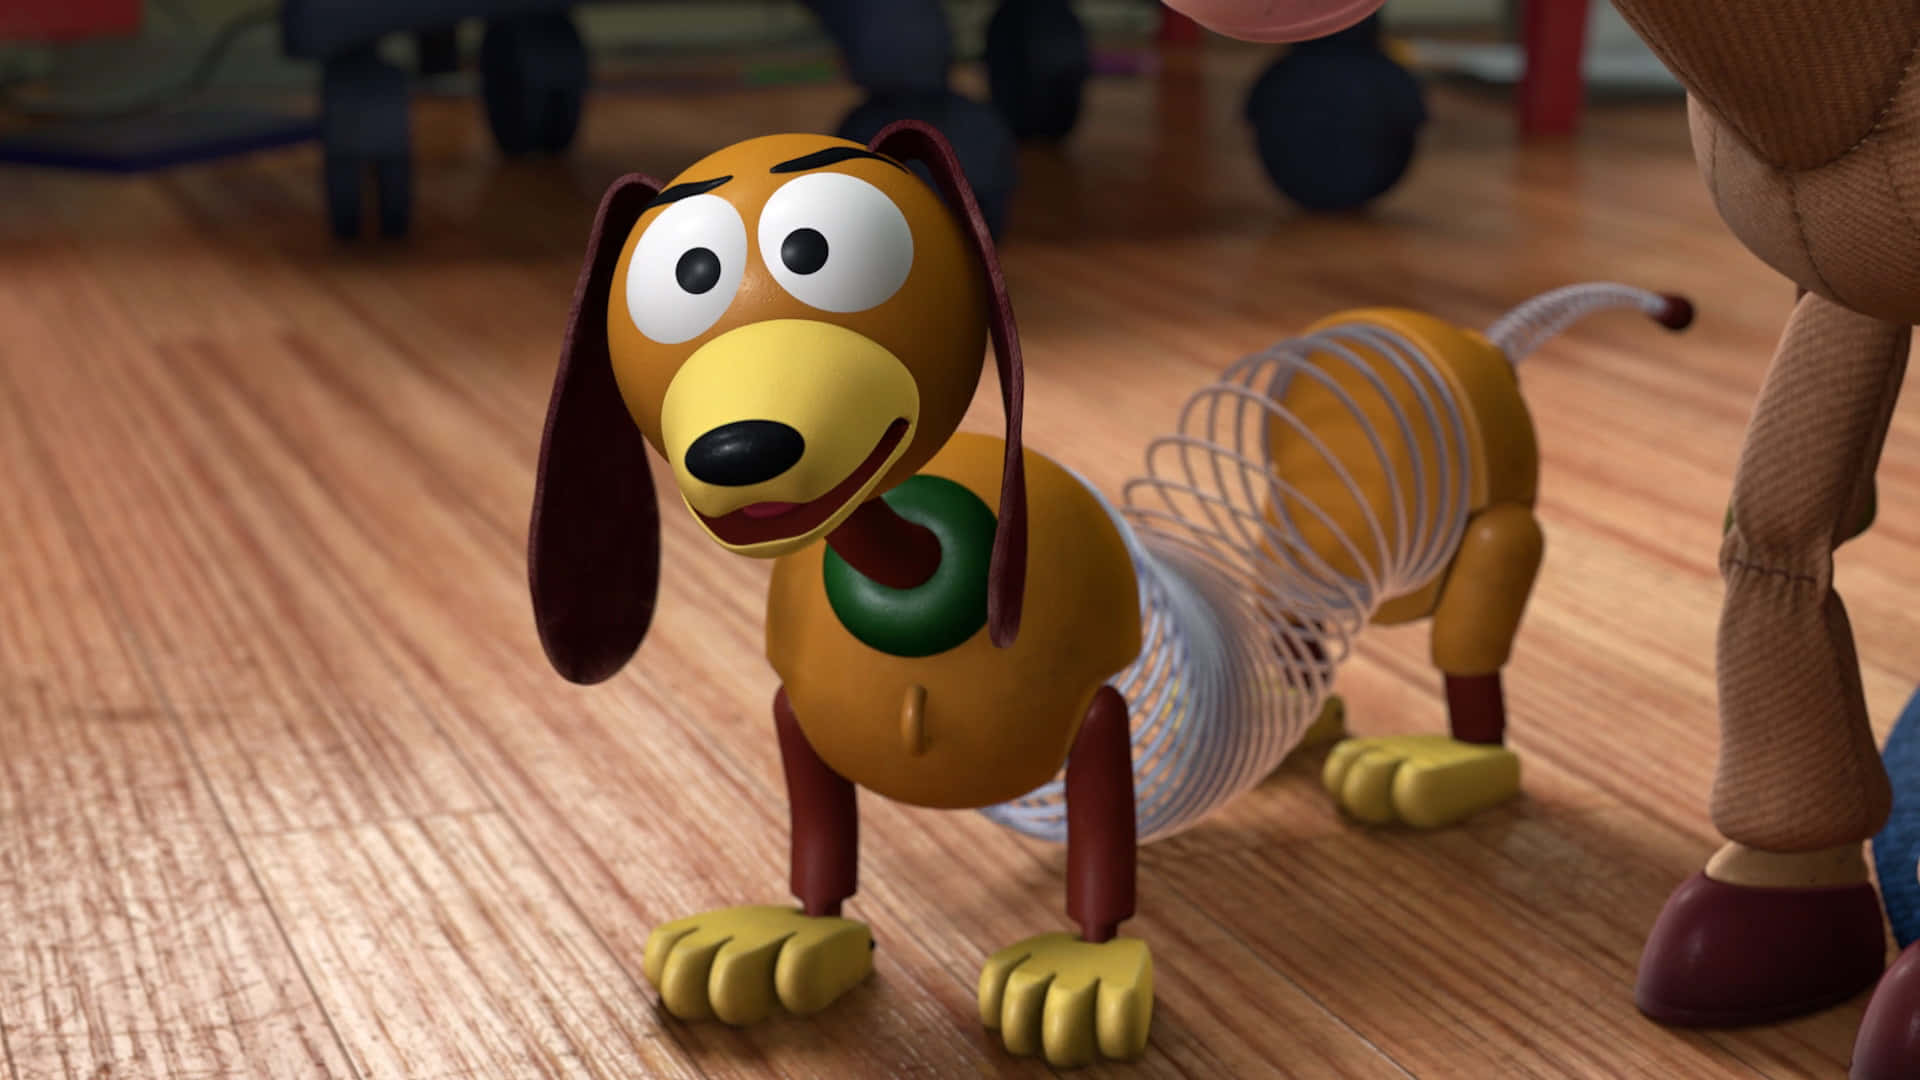 Bilddes Slinky-dogs Aus Dem Film Toy Story.